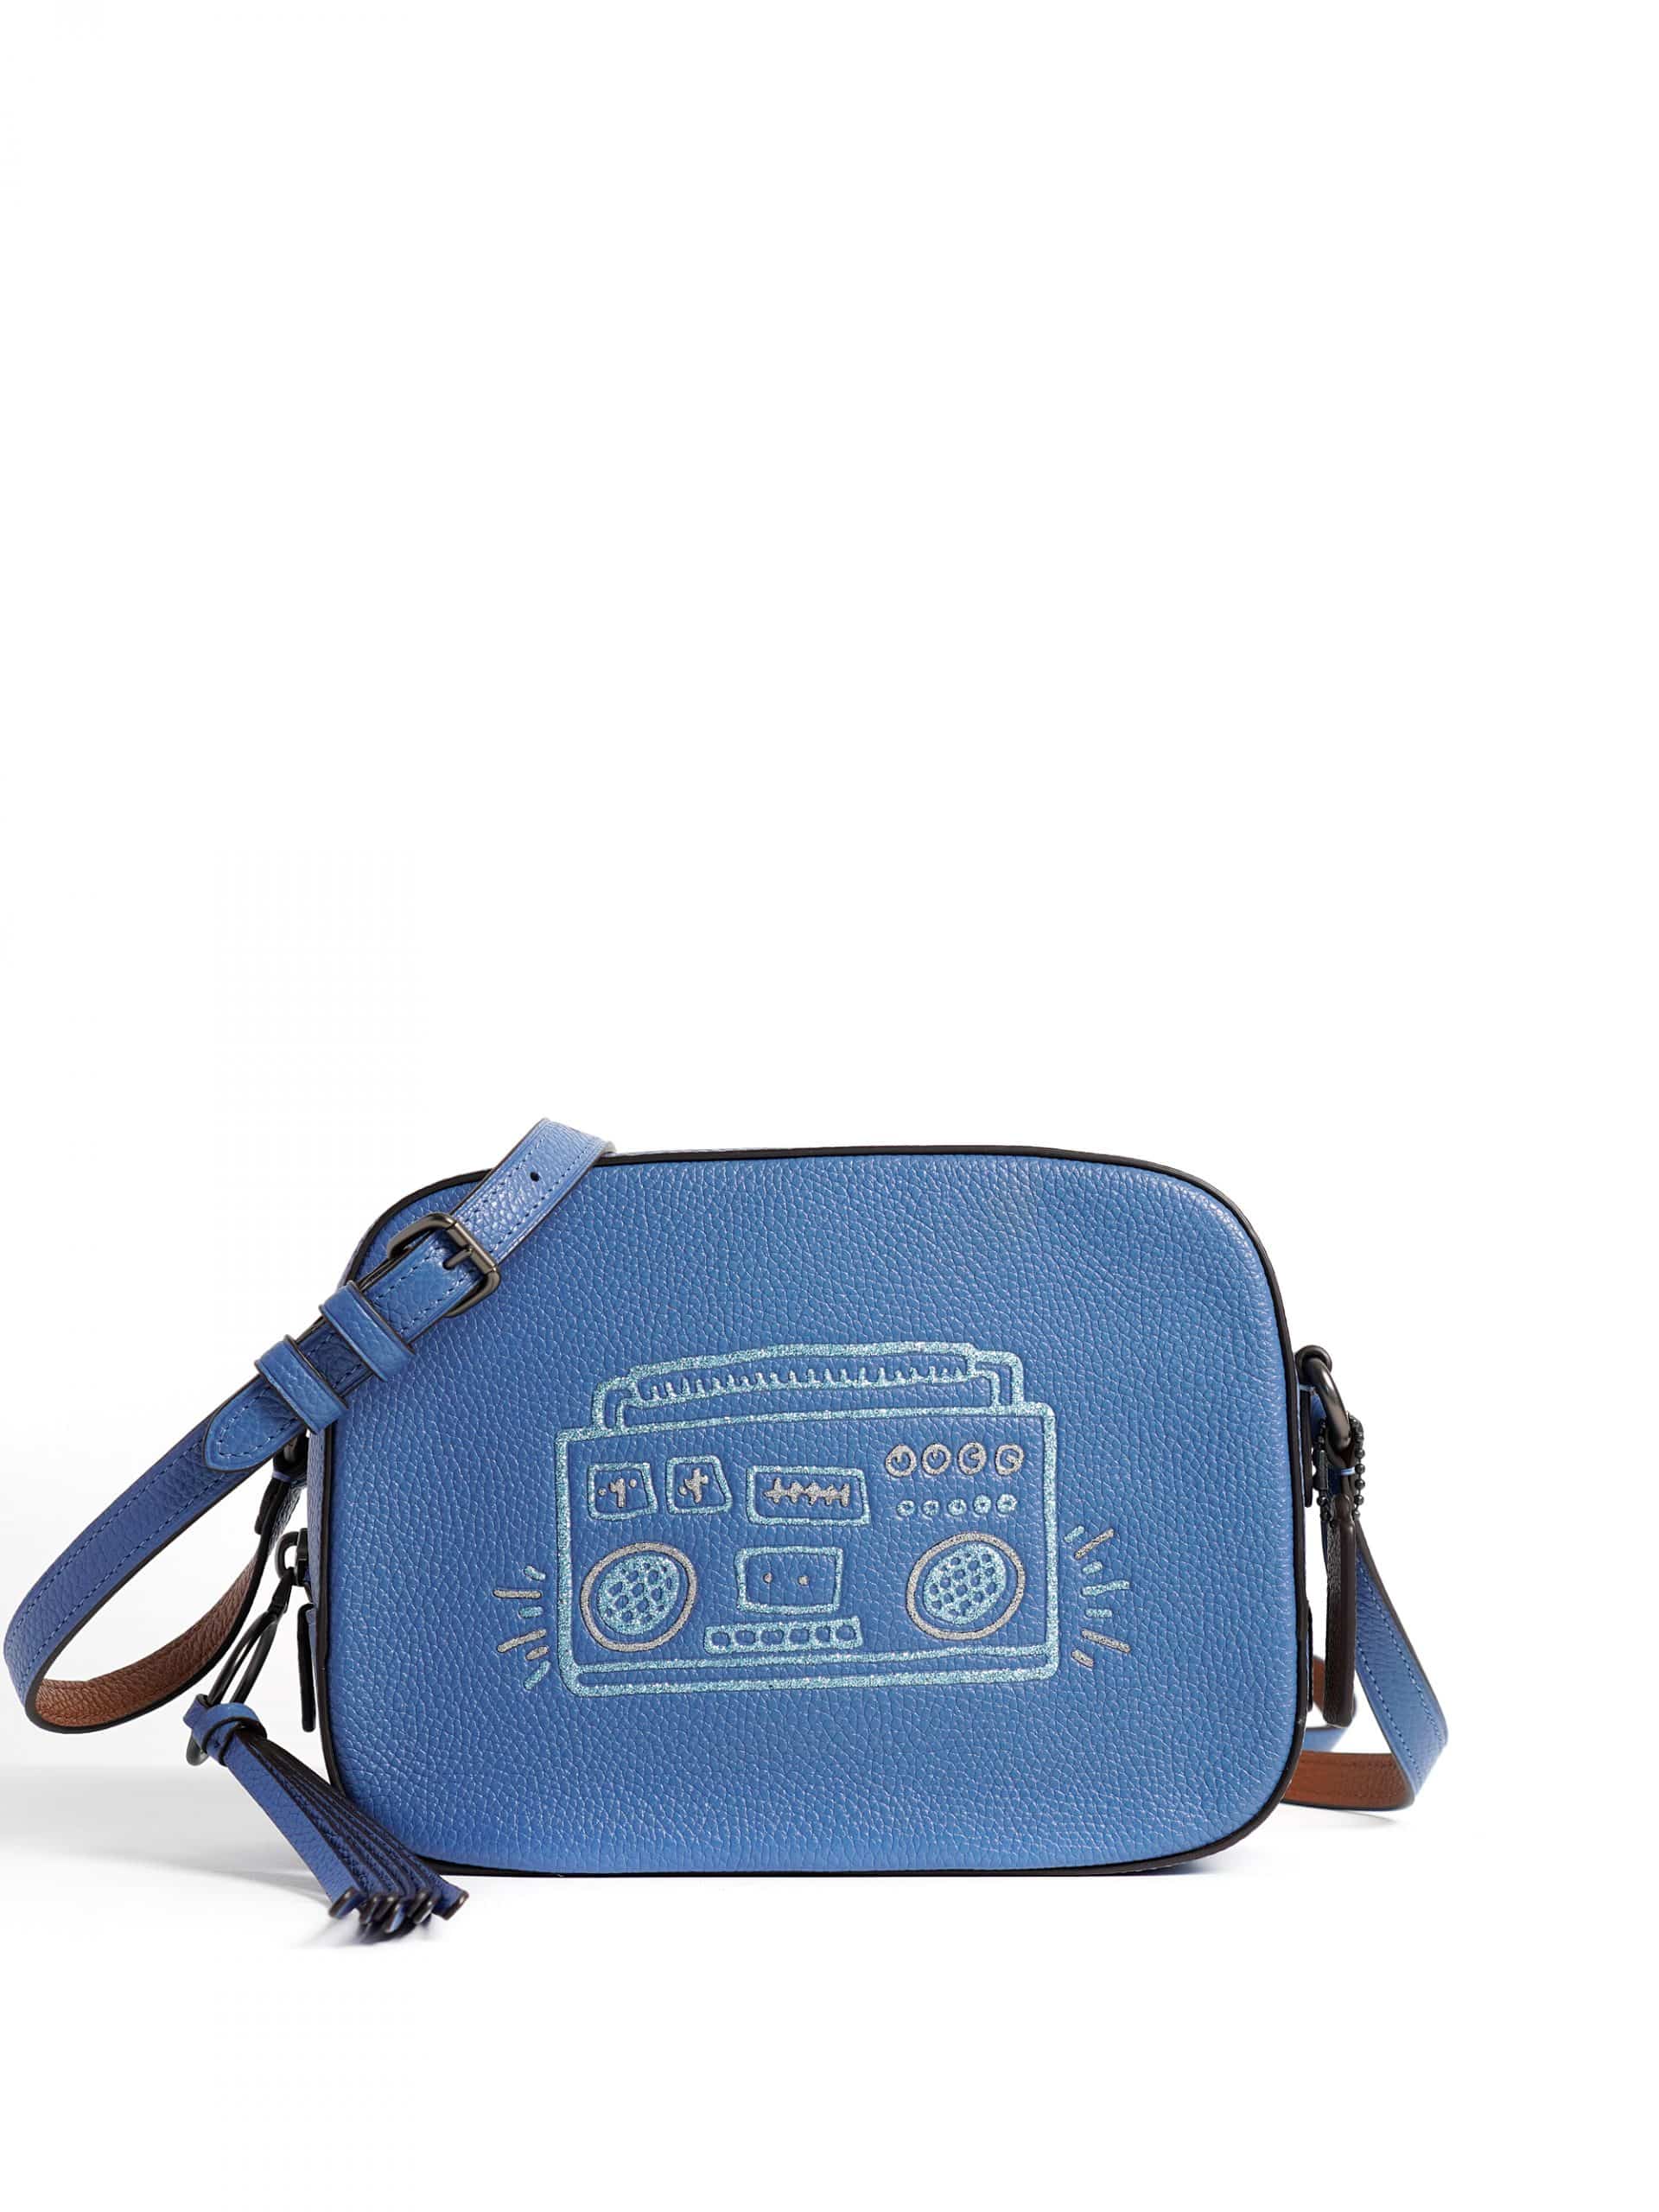 Coach X Keith Haring Camera Bag Sky Blue - Averand